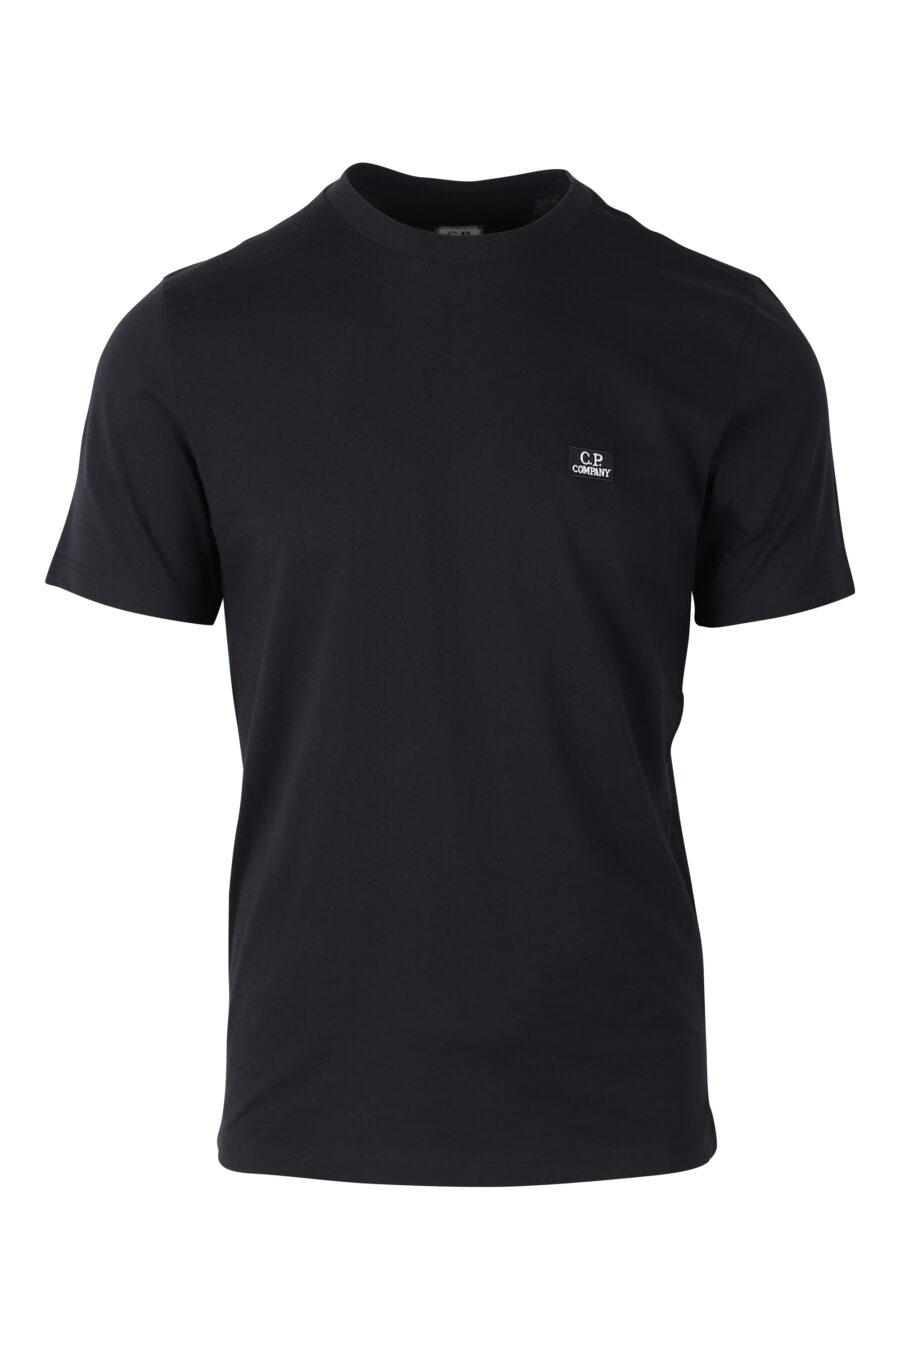 Schwarzes T-Shirt mit Logoaufnäher - IMG 2385